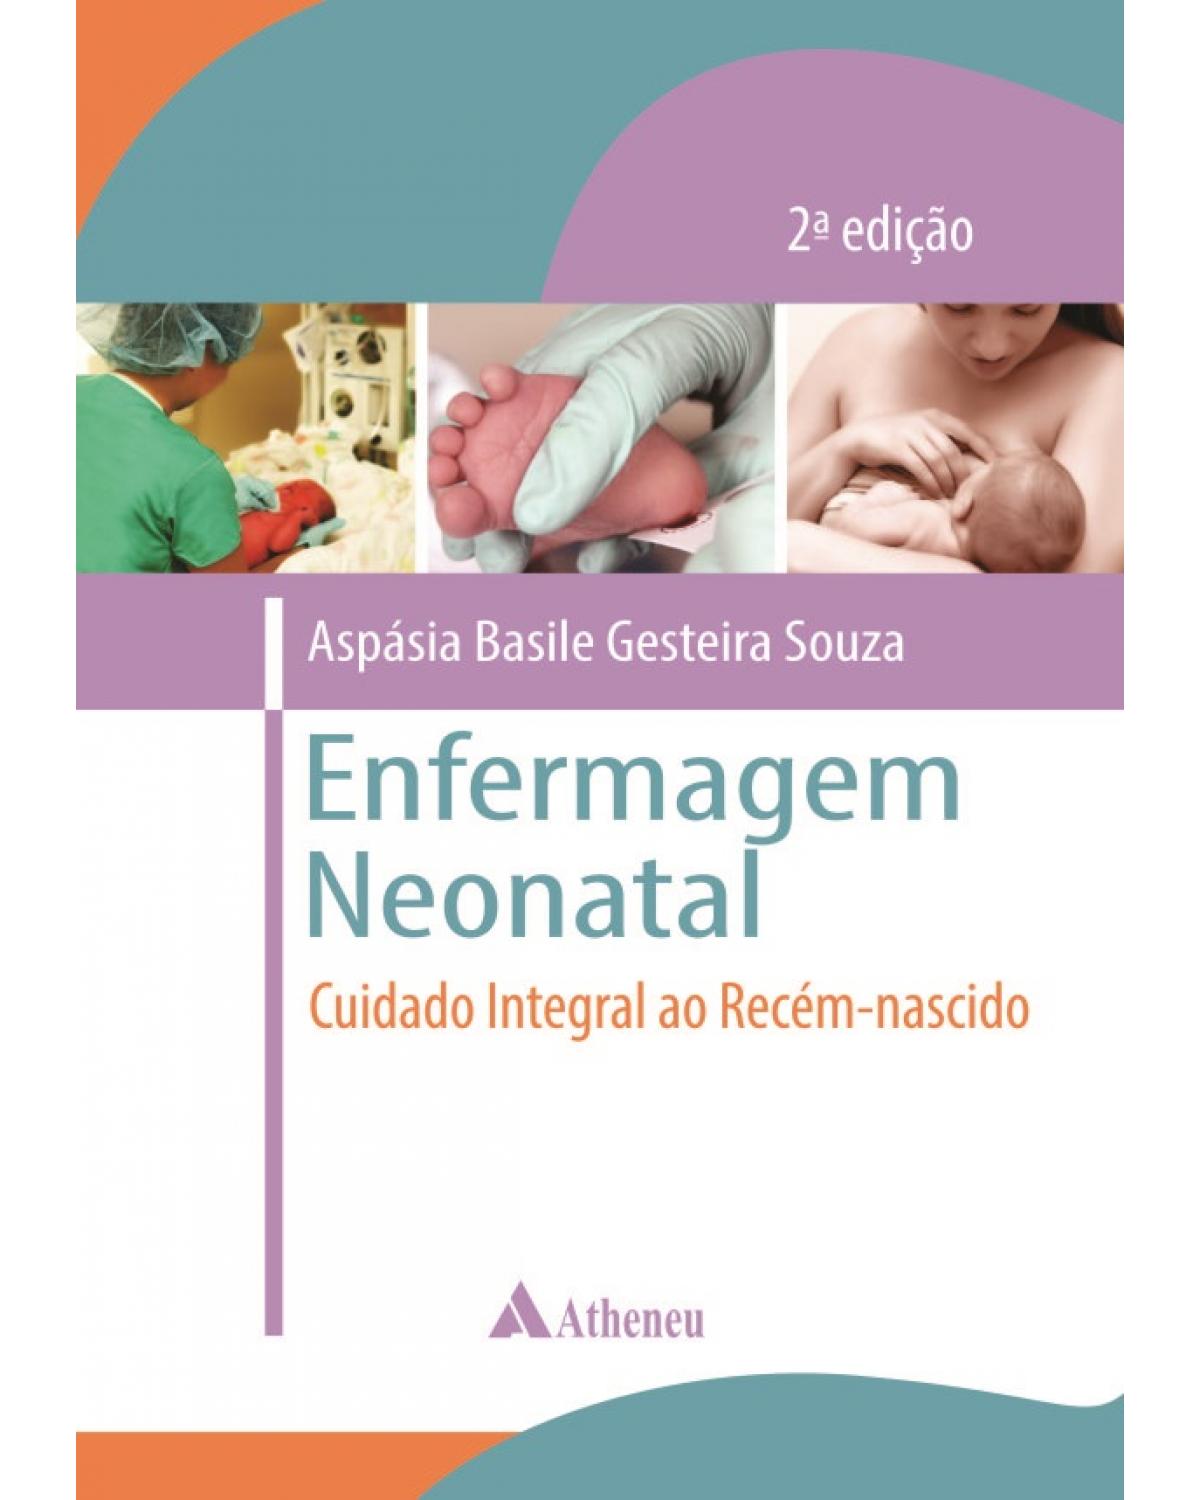 Enfermagem neonatal - cuidado integral ao recém-nascido - 2ª Edição | 2014